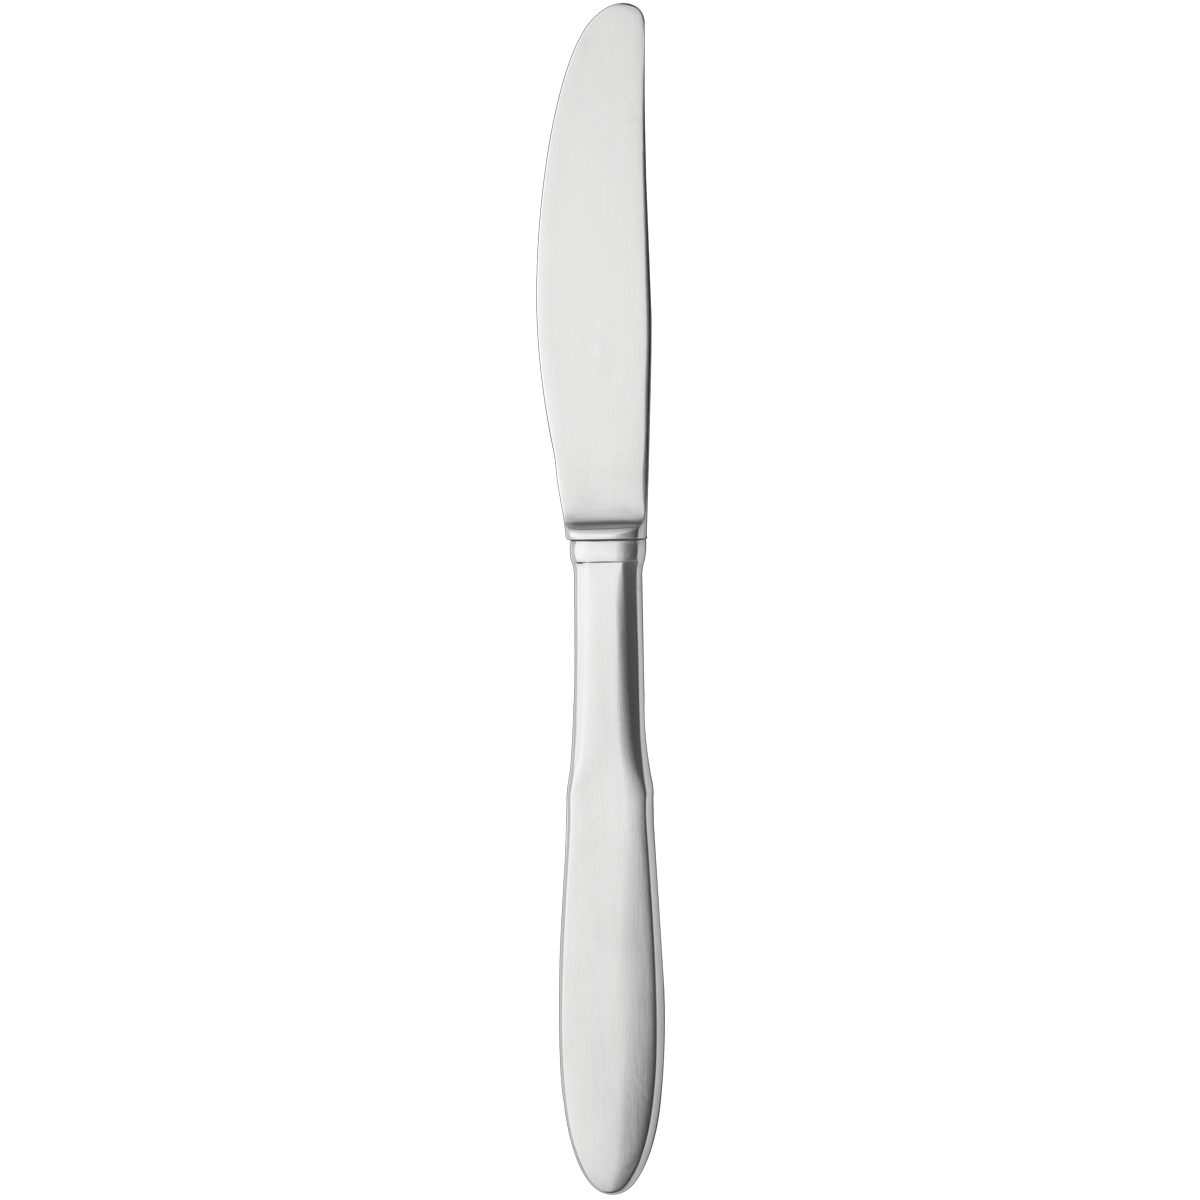 Steel Butter Knife Transparent PNG